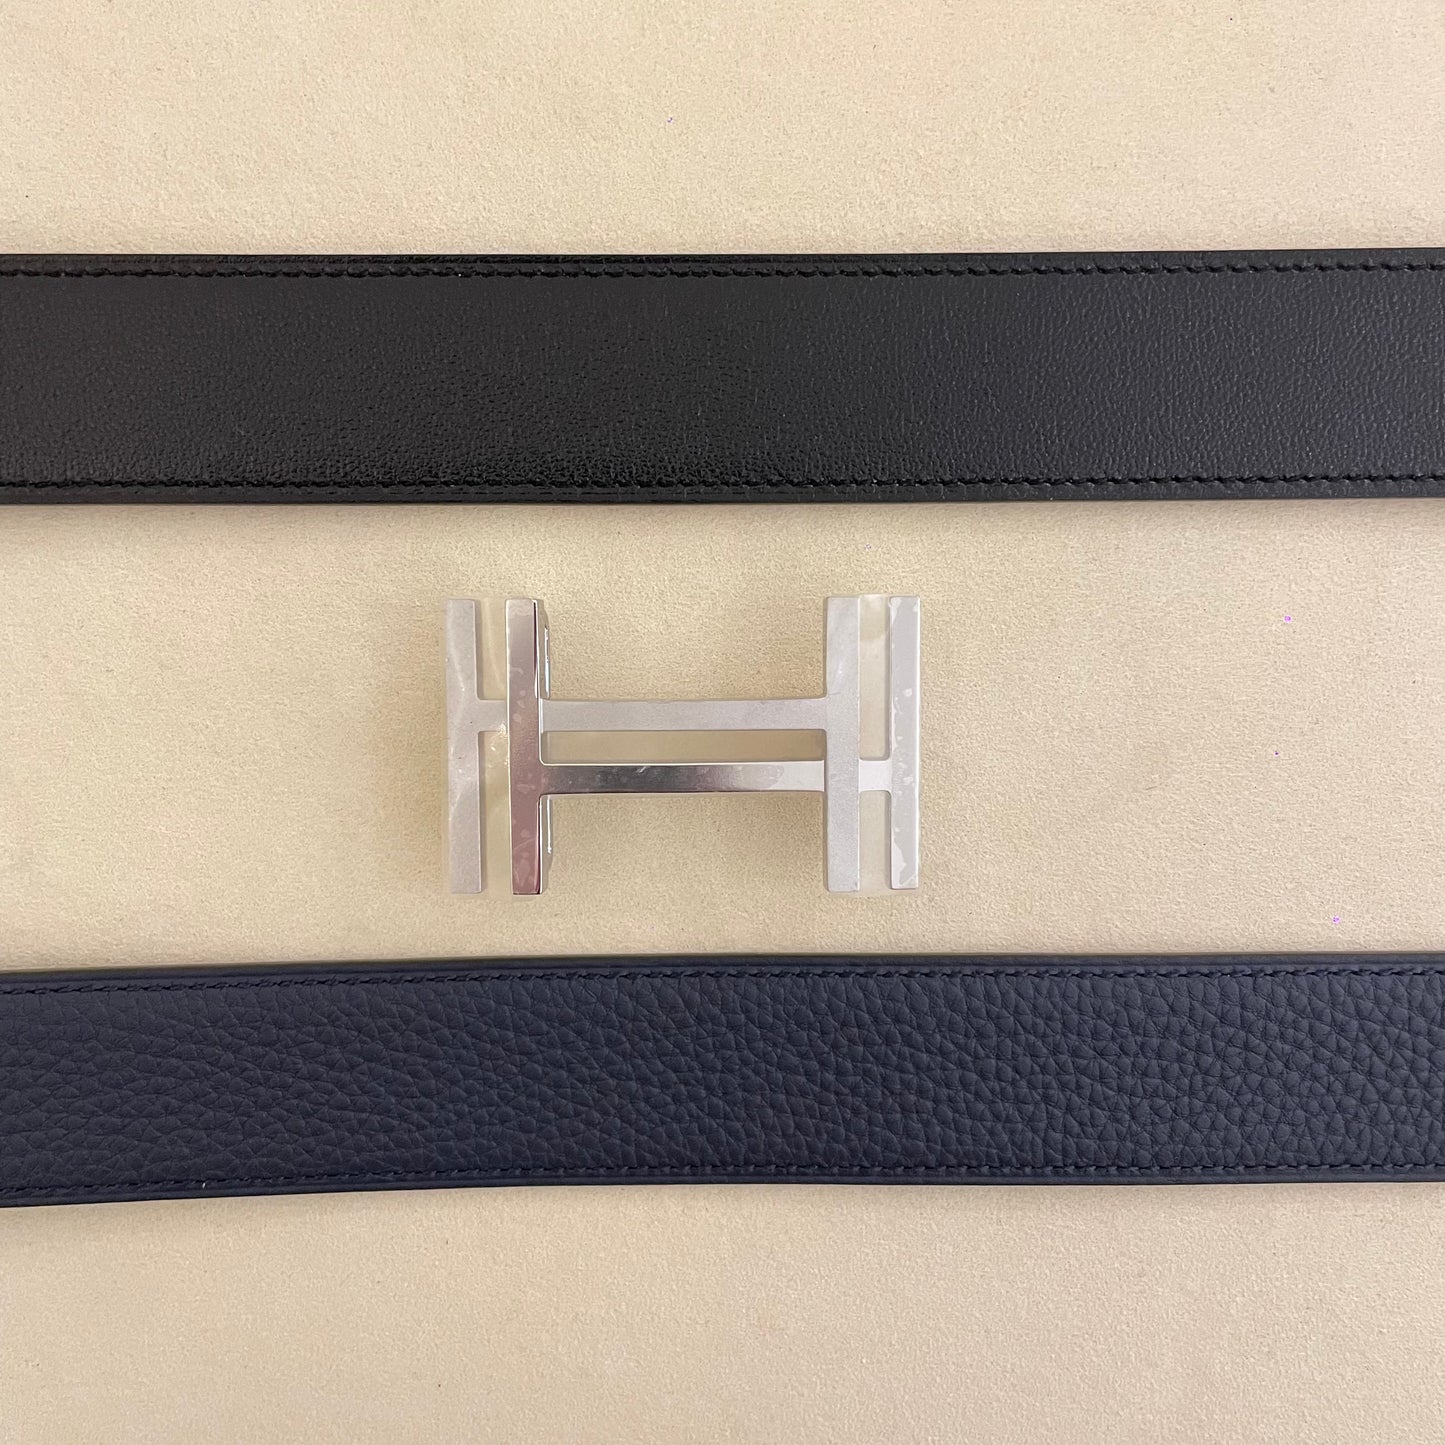 Hermès 32mm H au Carre belt buckle & Reversible leather strap 95cm